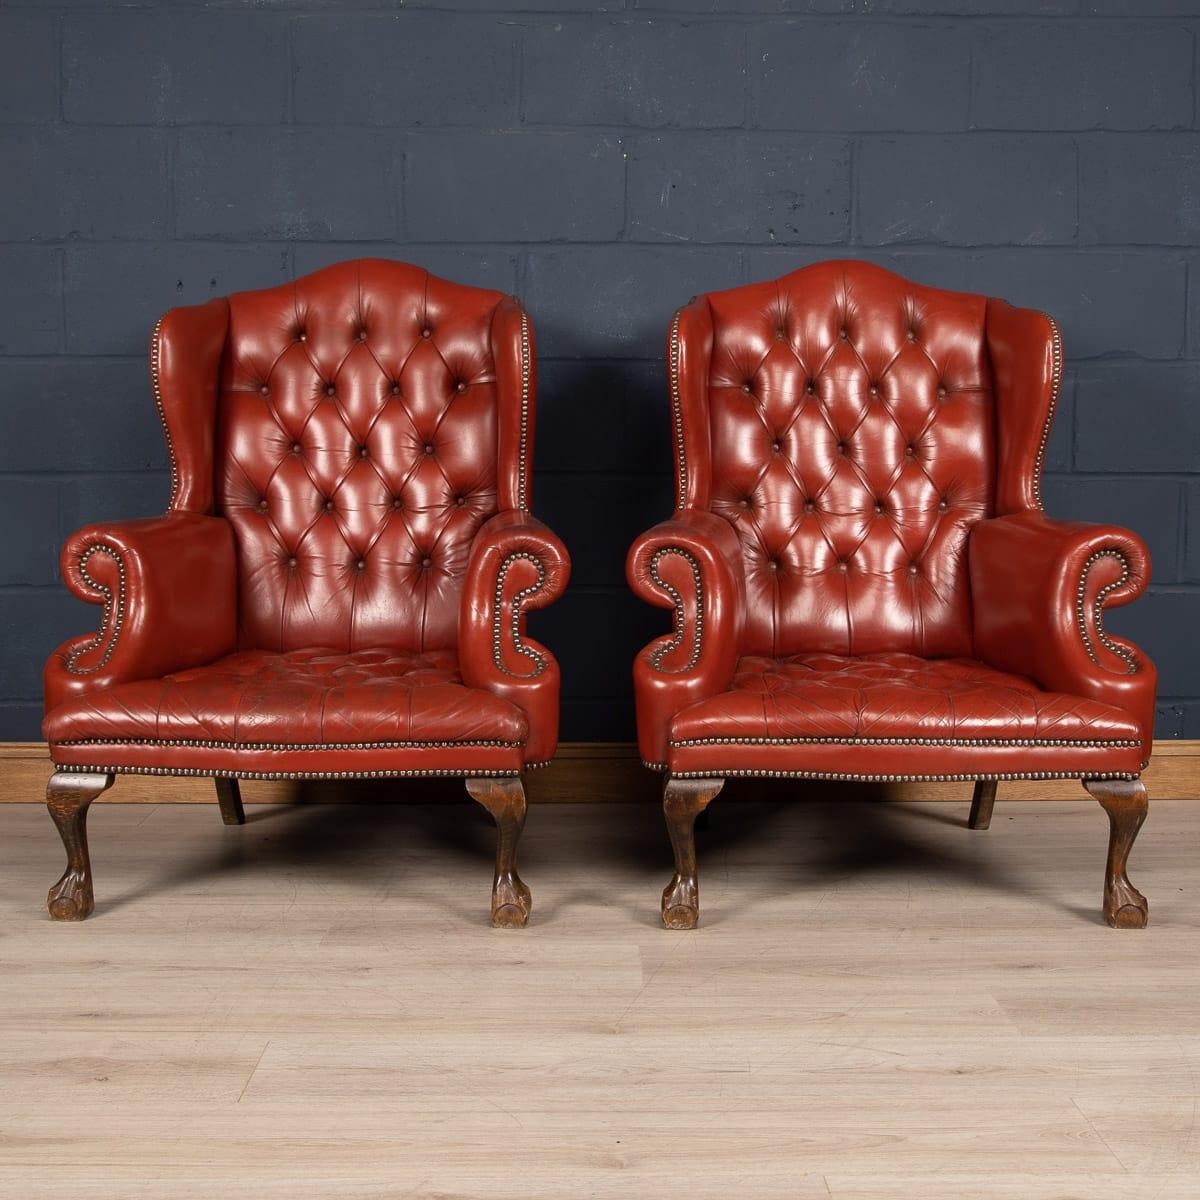 Ces fauteuils à oreilles en cuir sont un exemple exceptionnel de l'artisanat anglais du cuir. L'assise et l'appui-tête sont exceptionnellement cloutés, avec des clous en laiton sur l'accoudoir. La belle couleur et la patine du cuir ajoutent à la